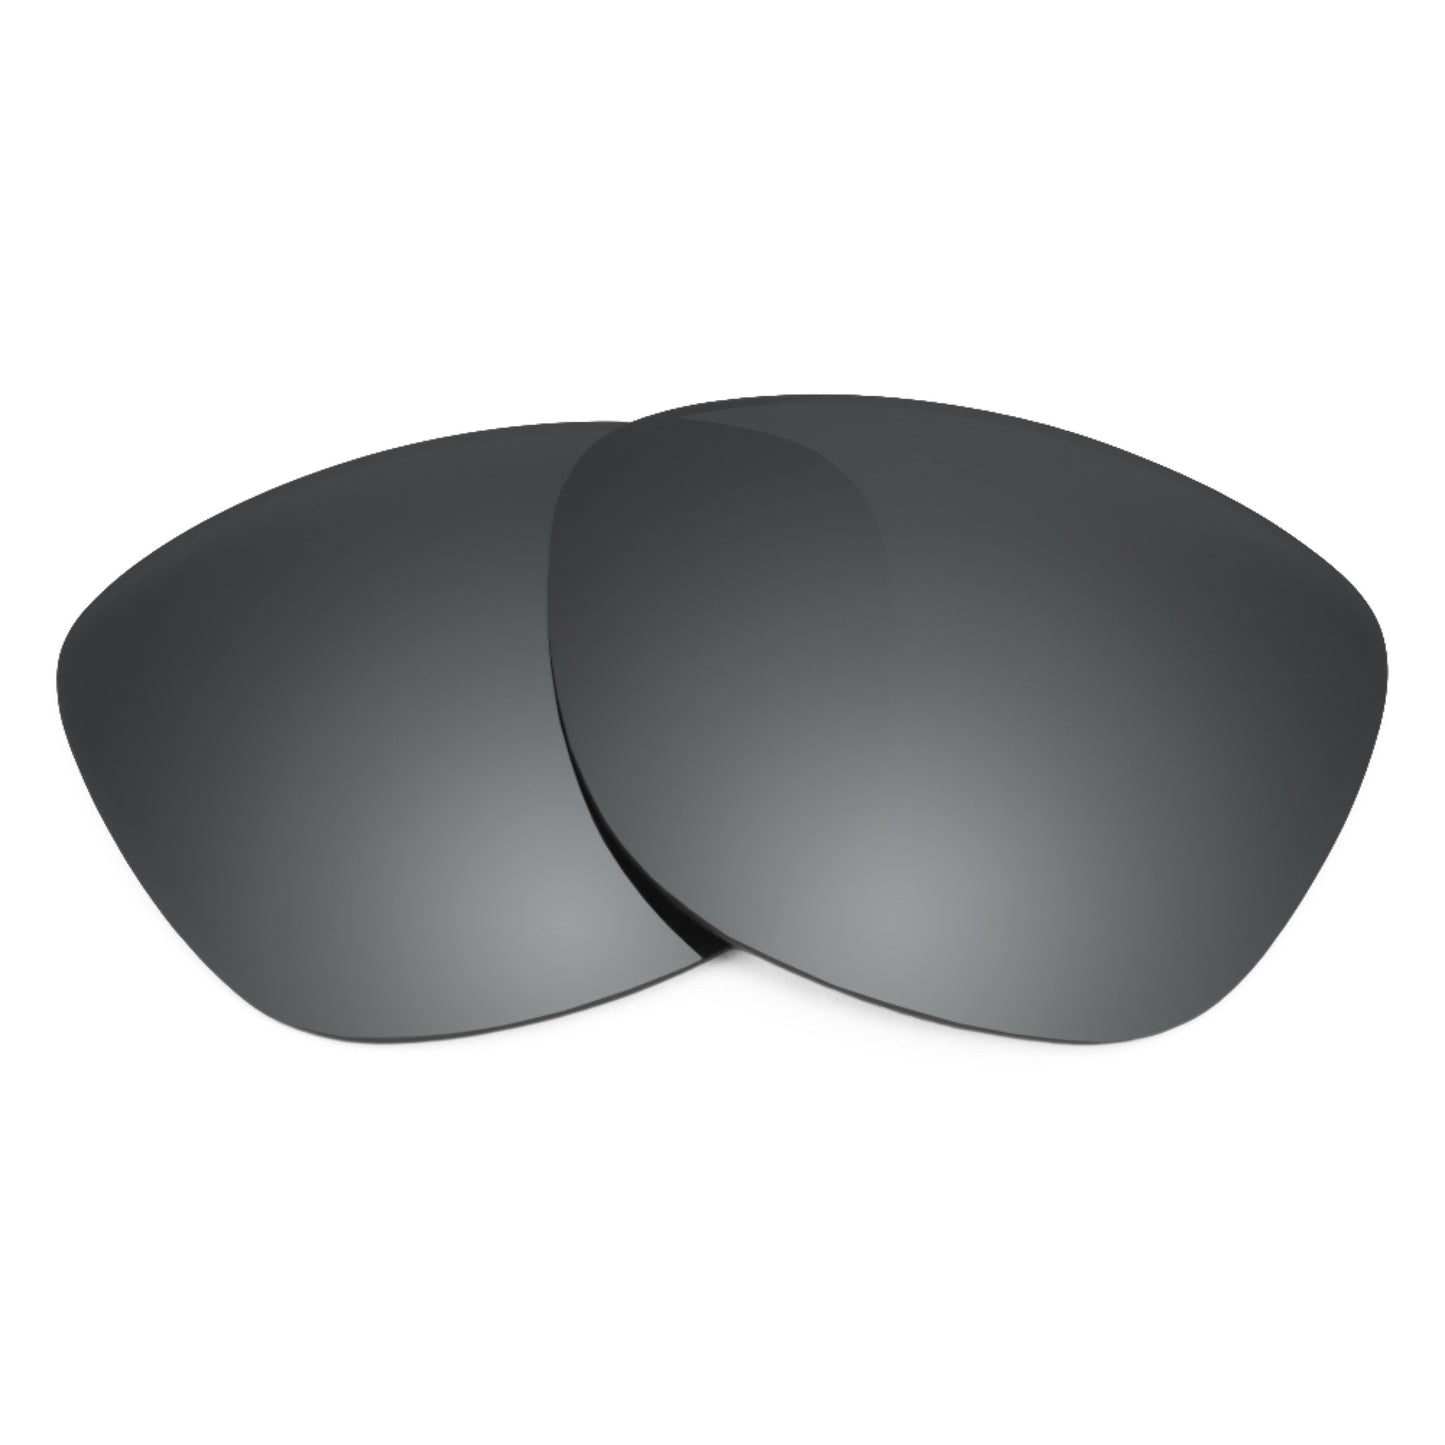 Revant replacement lenses for Ray-Ban Hexagonal RB3548N 51mm Elite Polarized Black Chrome